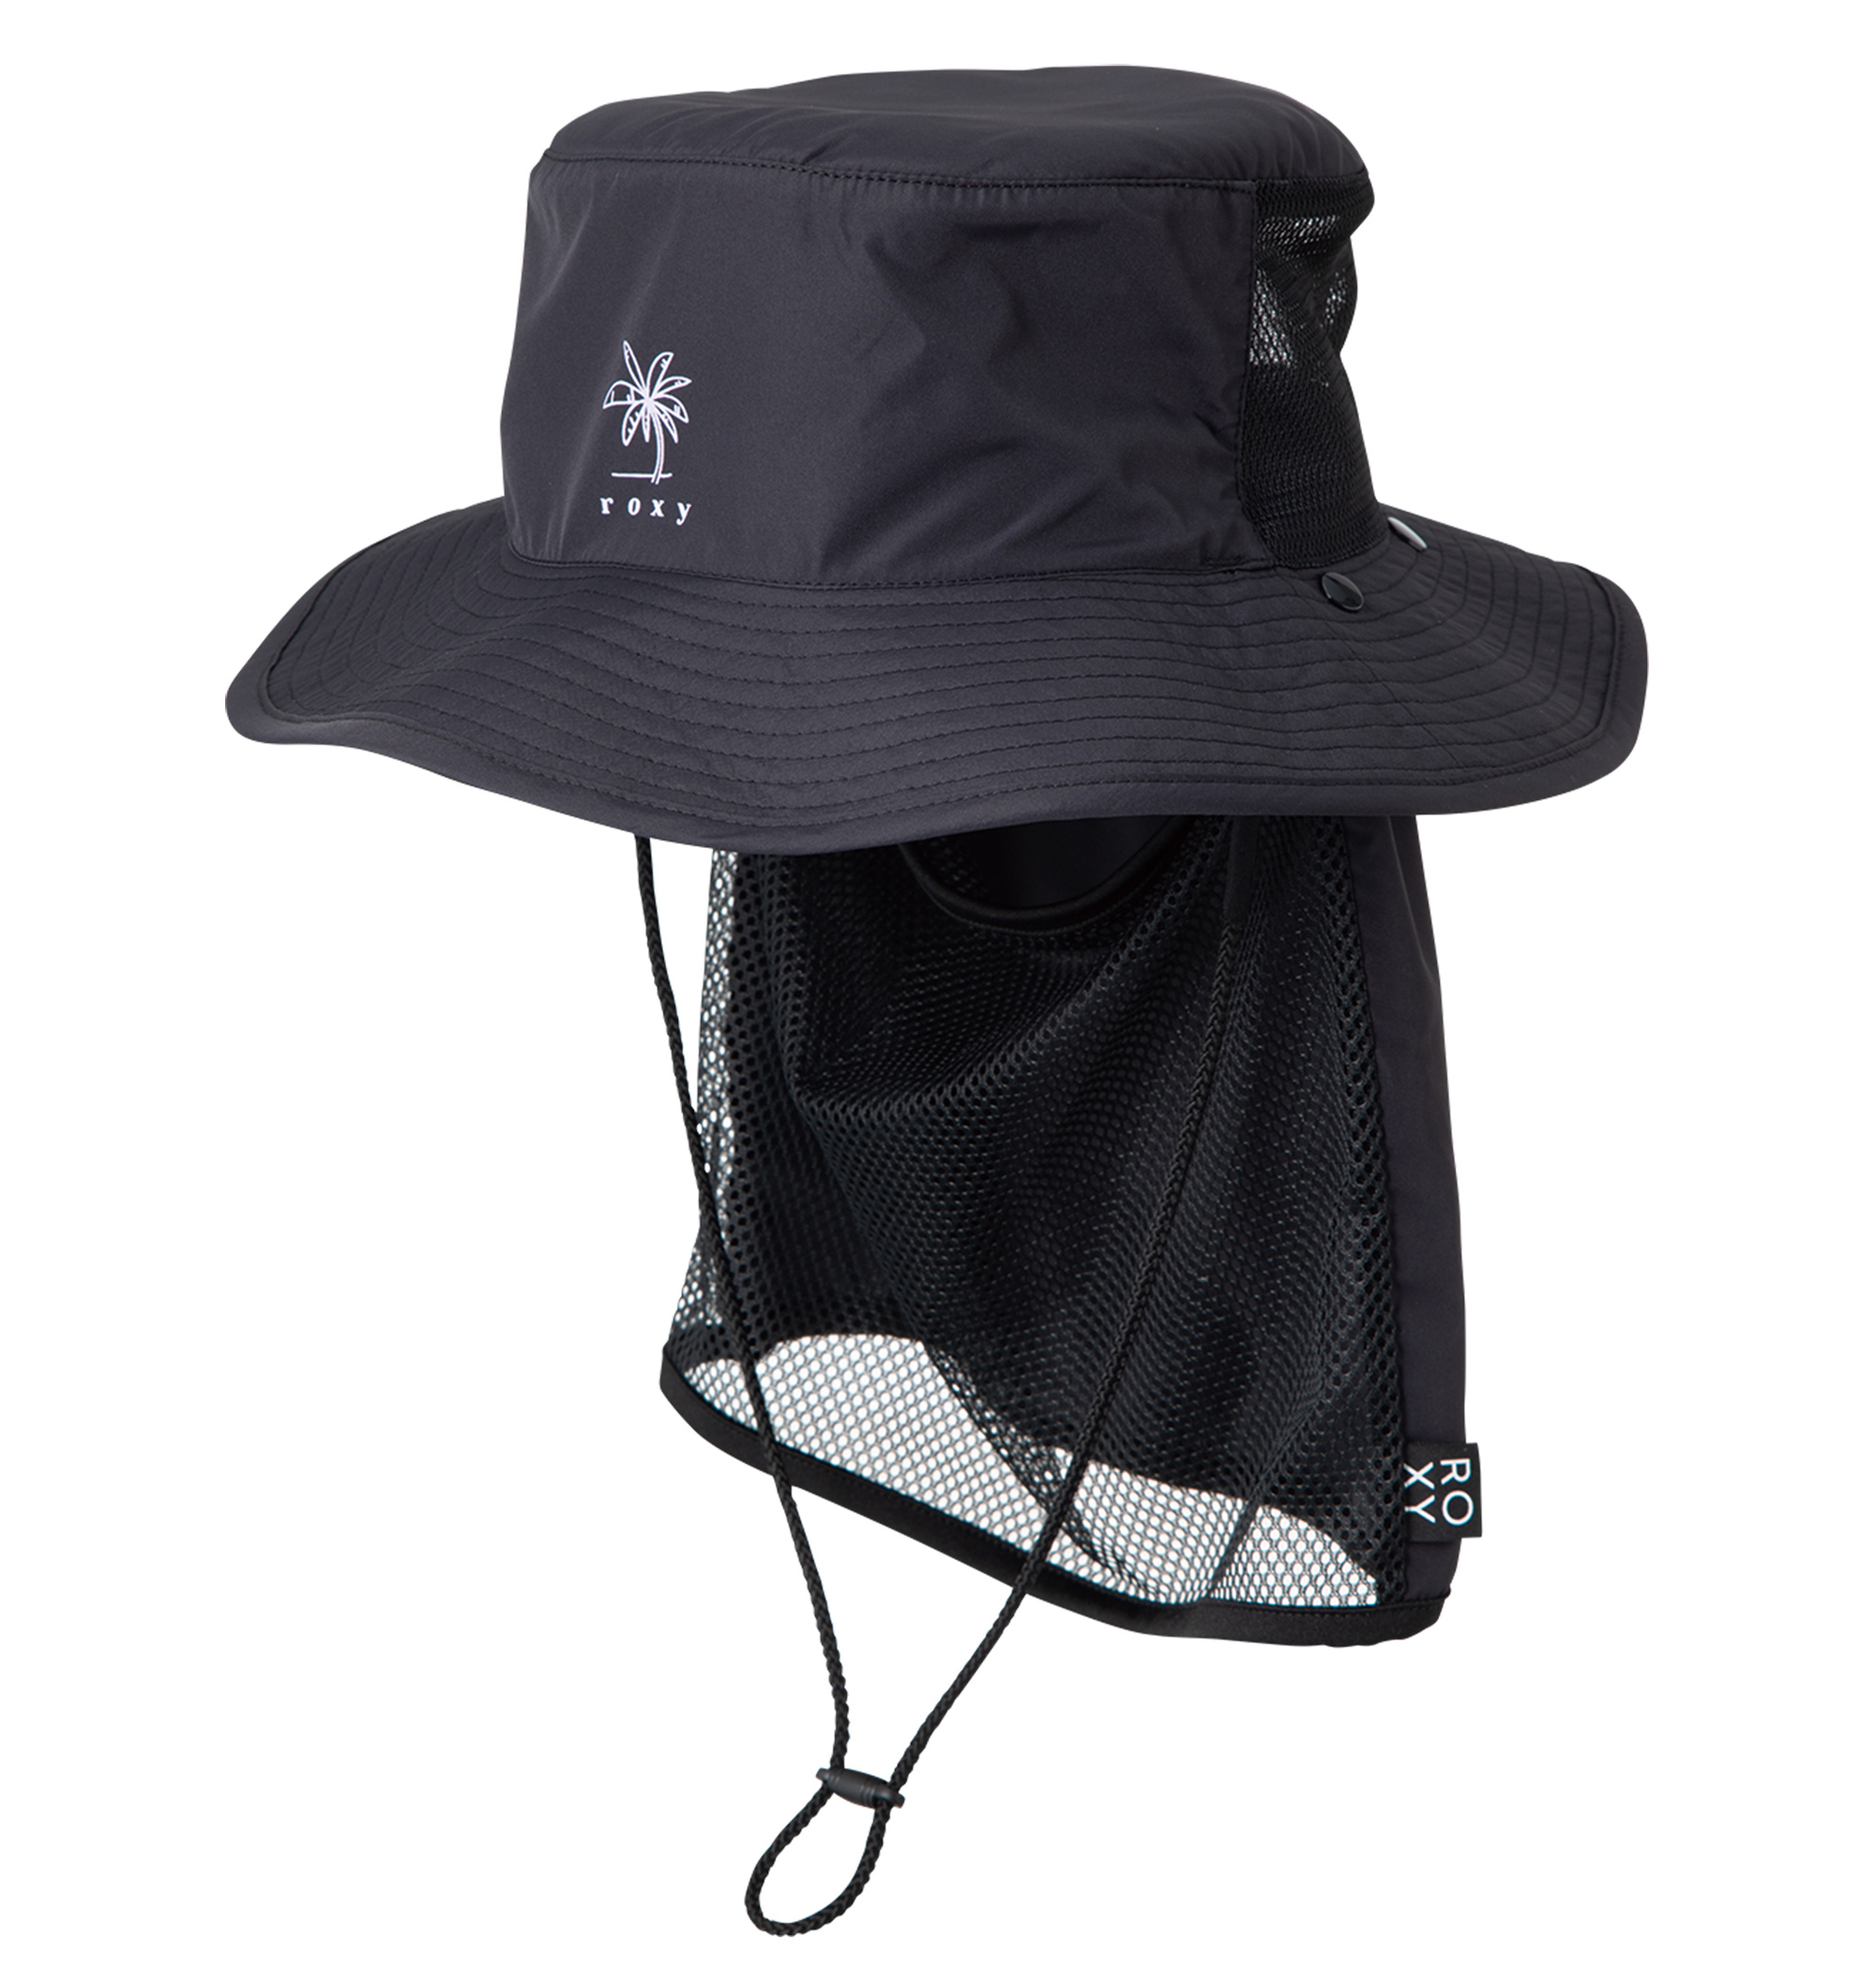 ＜Roxy＞UV SUP CAMP HAT ポリエステル100% UV CUT 撥水加工素材の日焼け防止ハット 